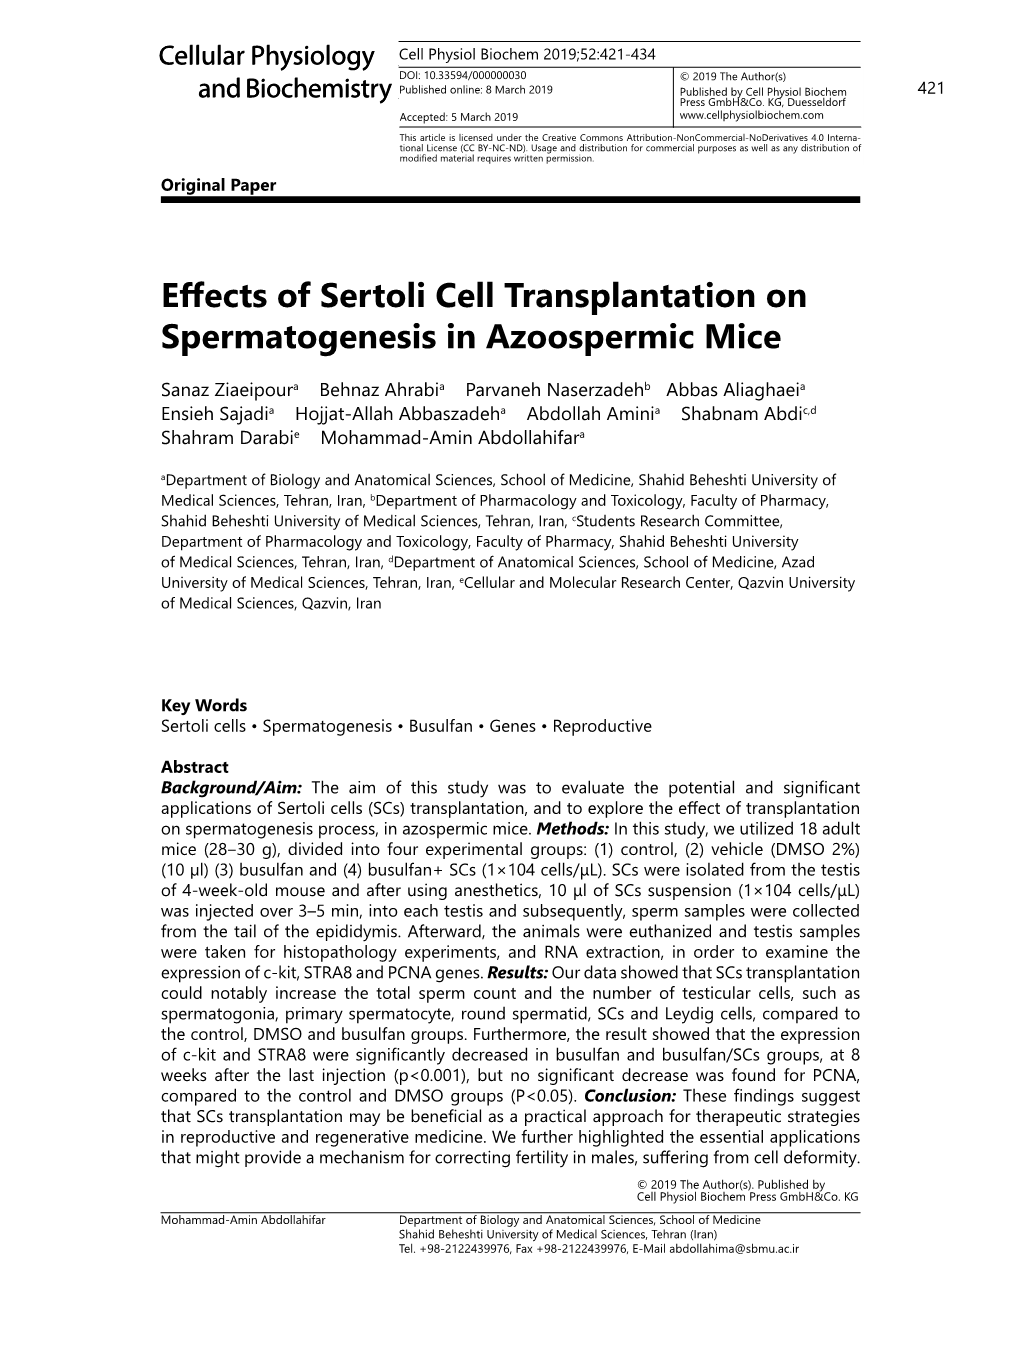 Effects of Sertoli Cell Transplantation on Spermatogenesis in Azoospermic Mice